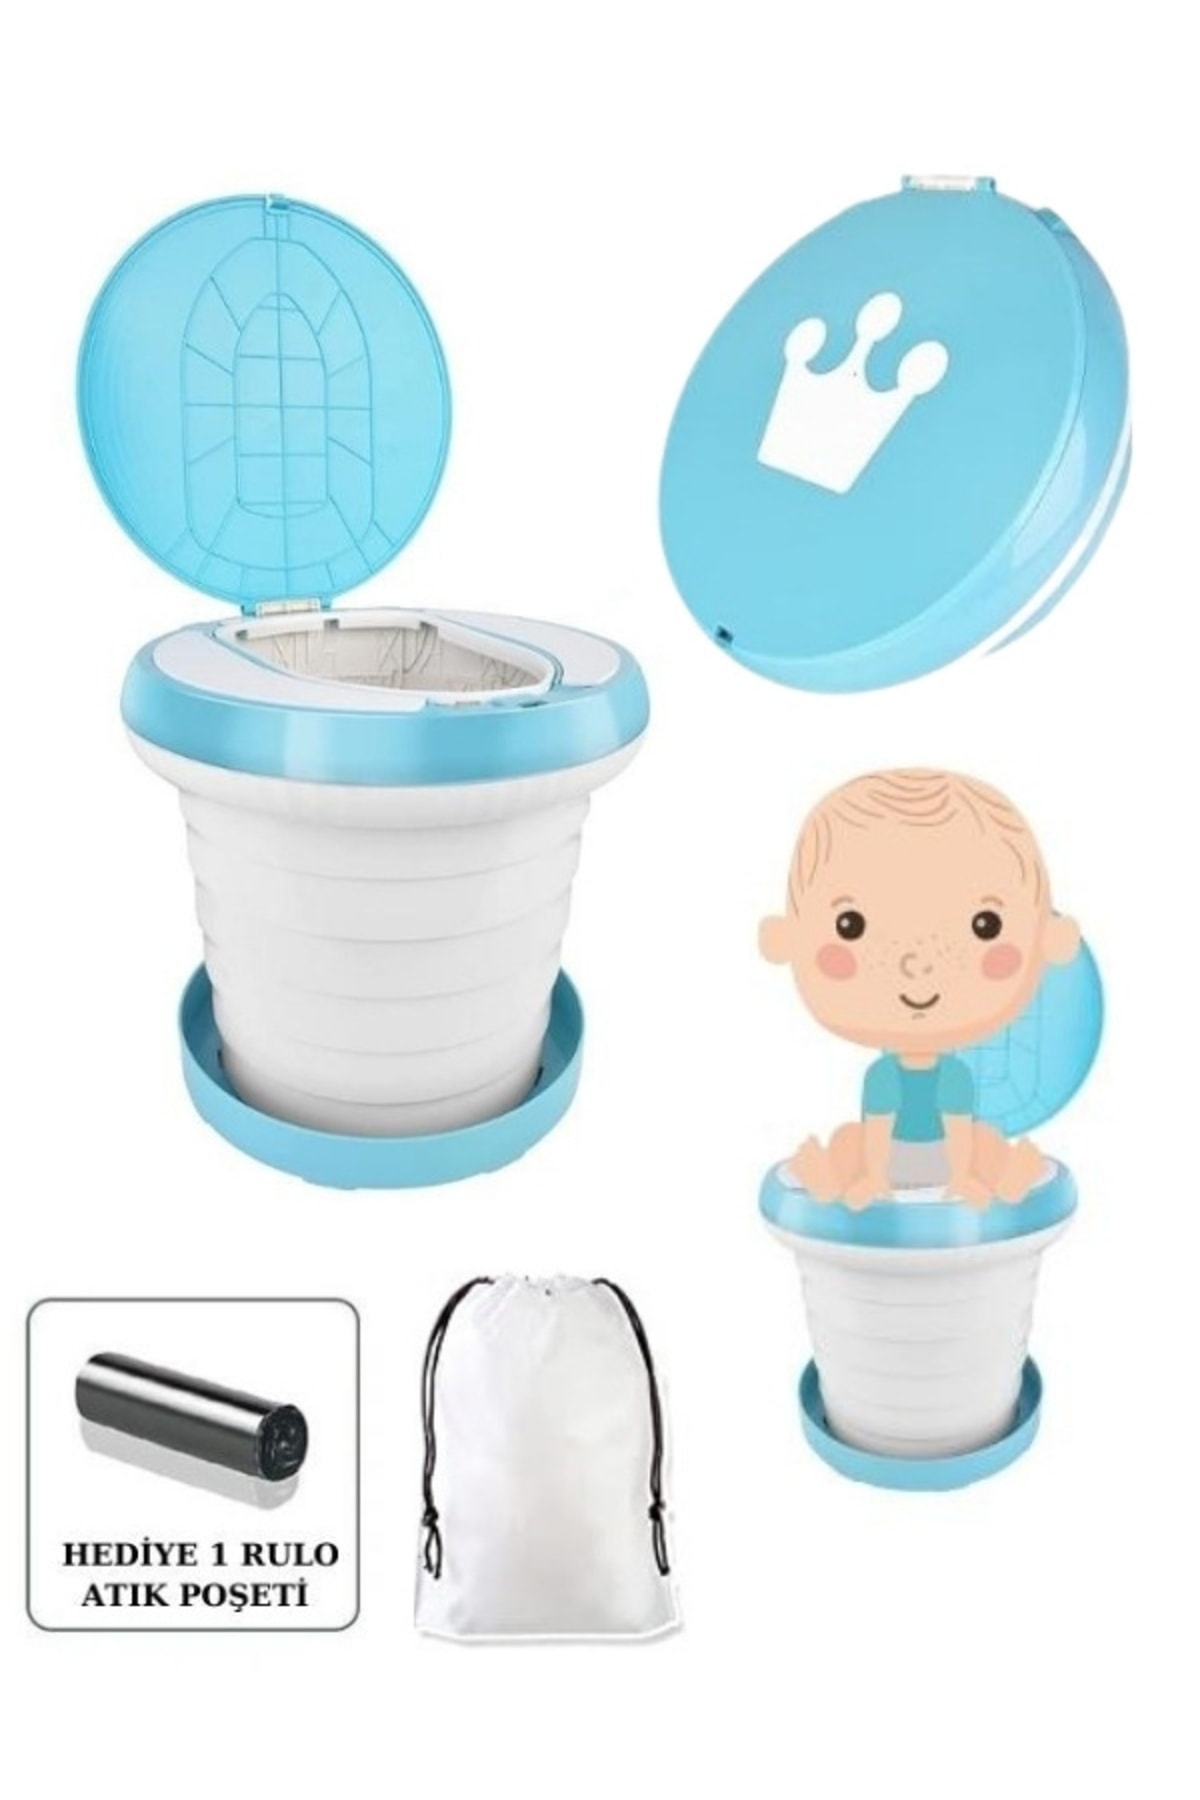 MooieBaby's Katlanabilir Çocuk Tuvaleti Plus,çok Fonksiyonlu Alıştırma Tuvaleti